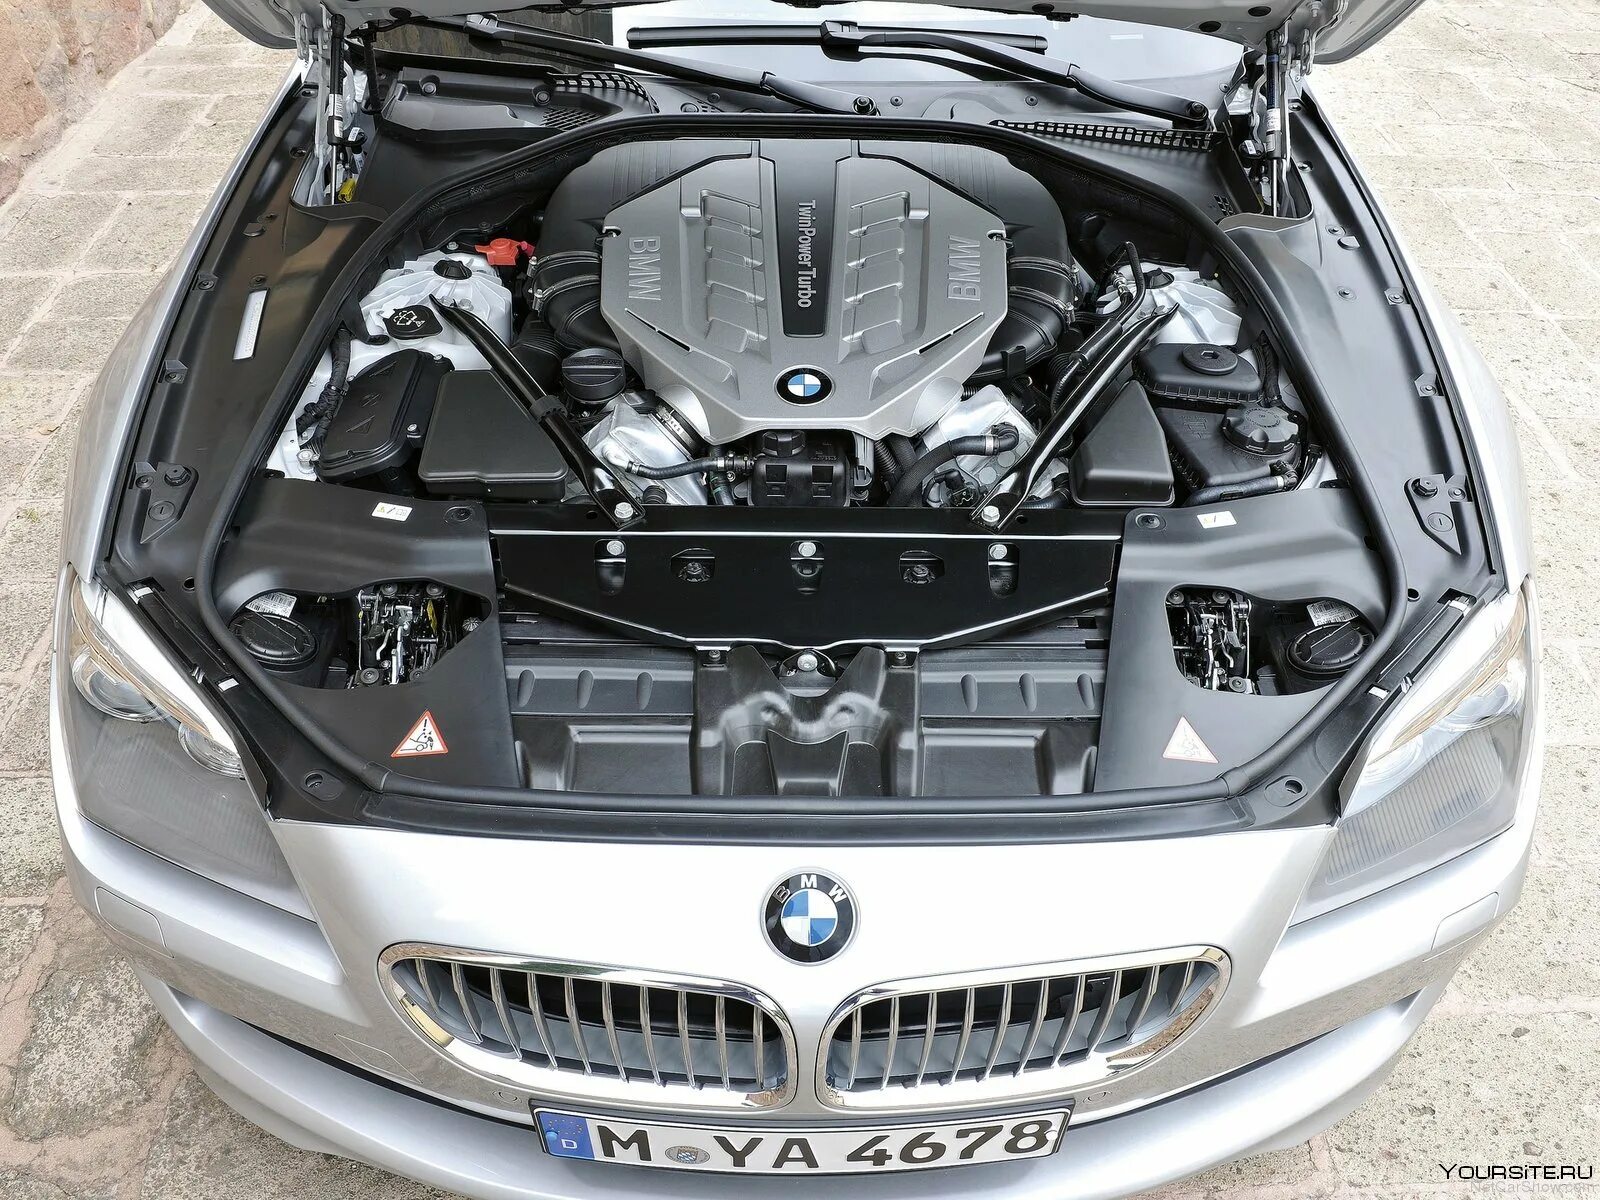 Машина с открытым капотом. Двигатель BMW 650i. БМВ 650 f06 мотор. BMW f02 под капот. BMW 650i под капотом.